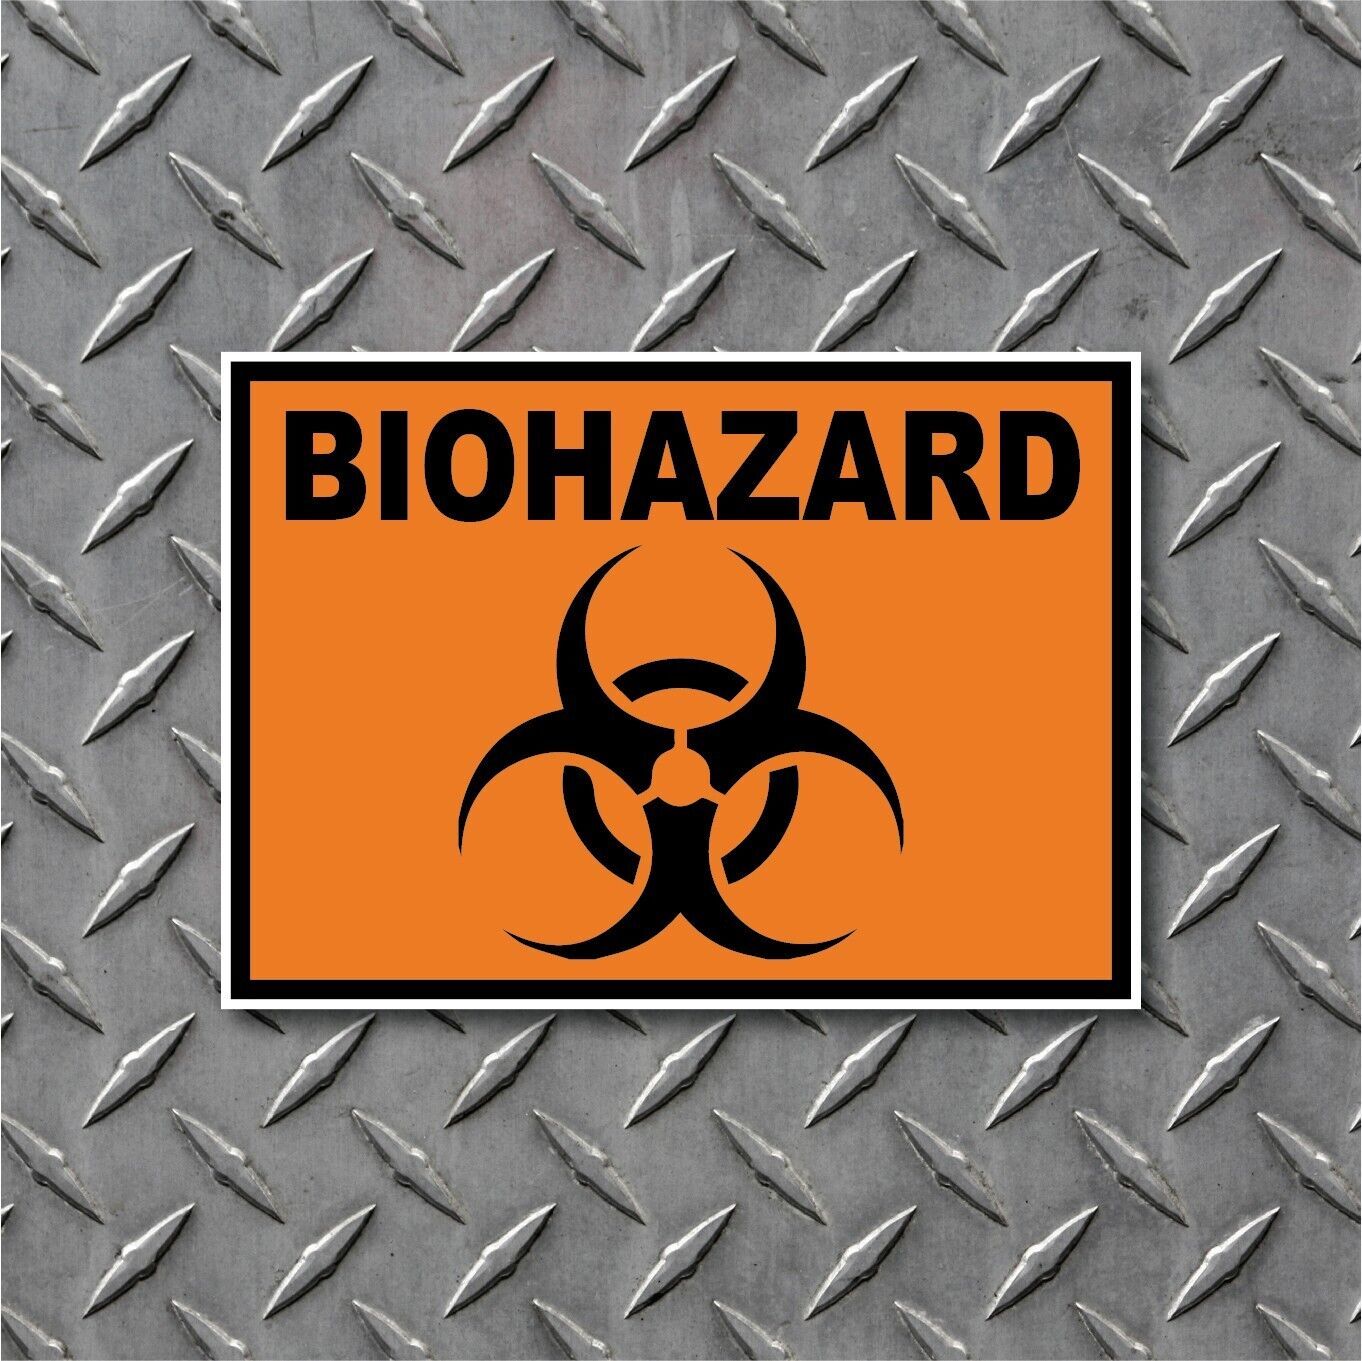 BioHazard Bio-Hazard Danger Warning Vinyl Decal Indoor Outdoor High Quality - $2.48 - $11.88